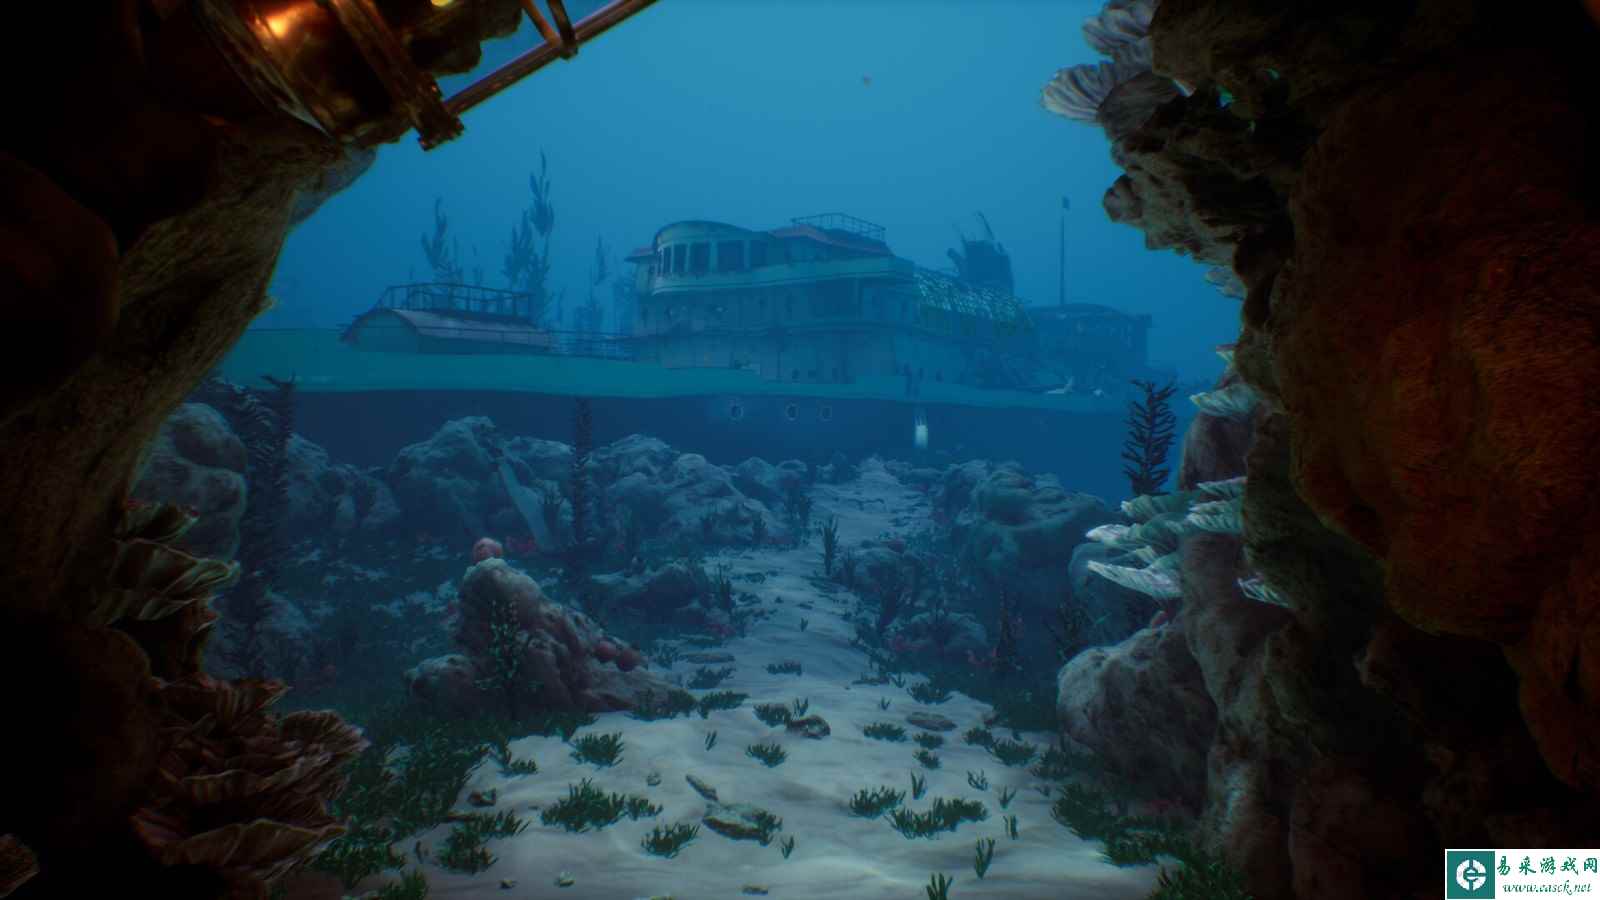 以深海为背景的推理游戏《萨拉萨：深渊边缘》将于6月18日登陆Steam平台